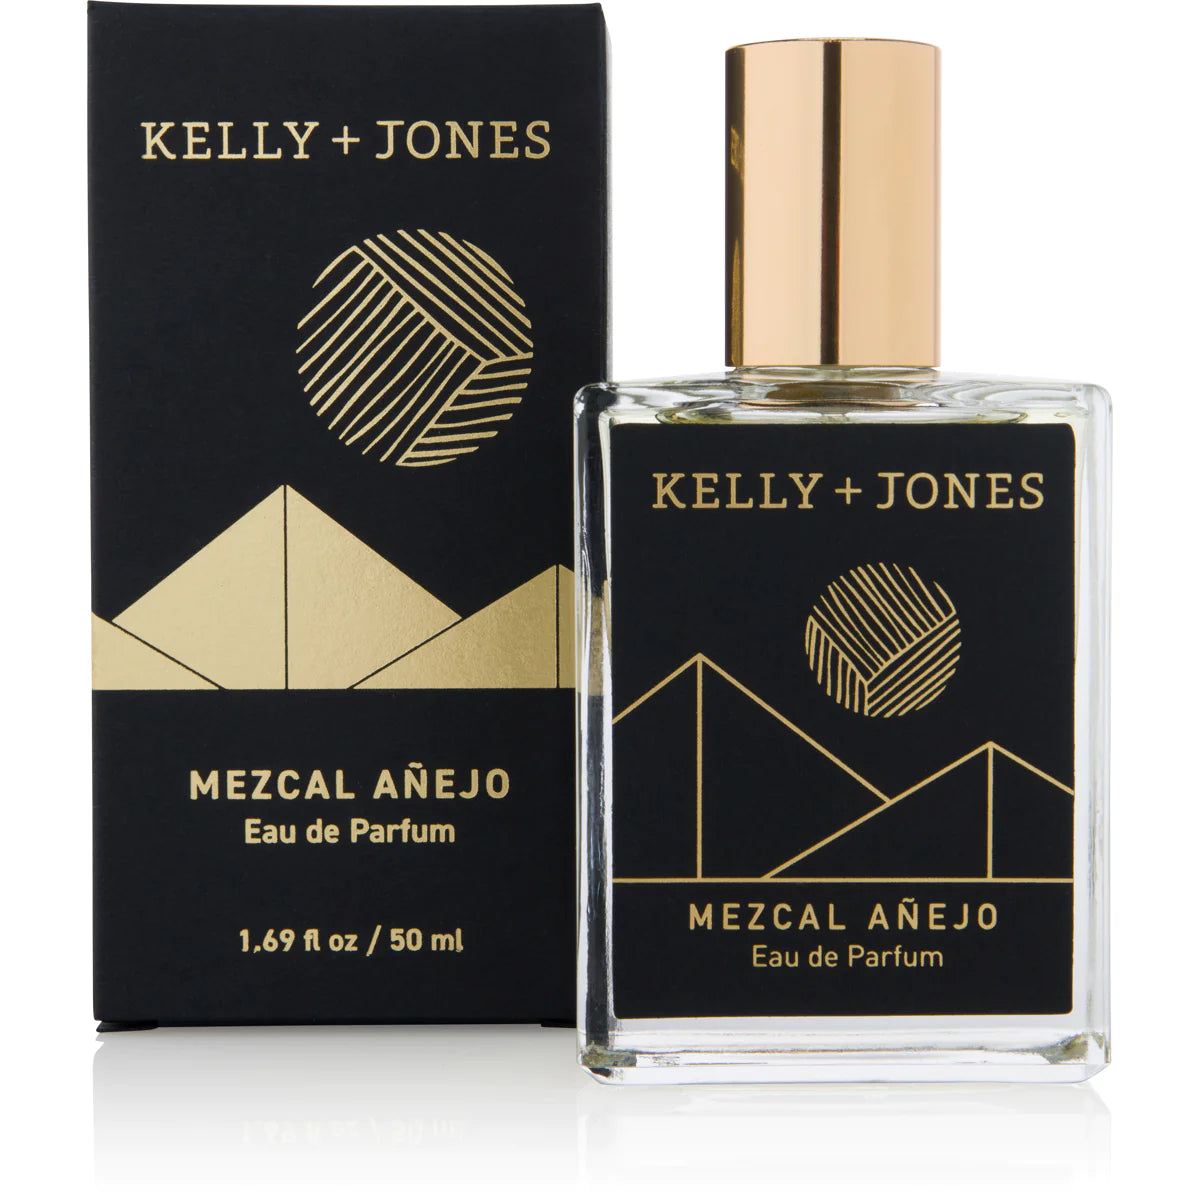 Kelly + Jones I MEZCAL AÑEJO